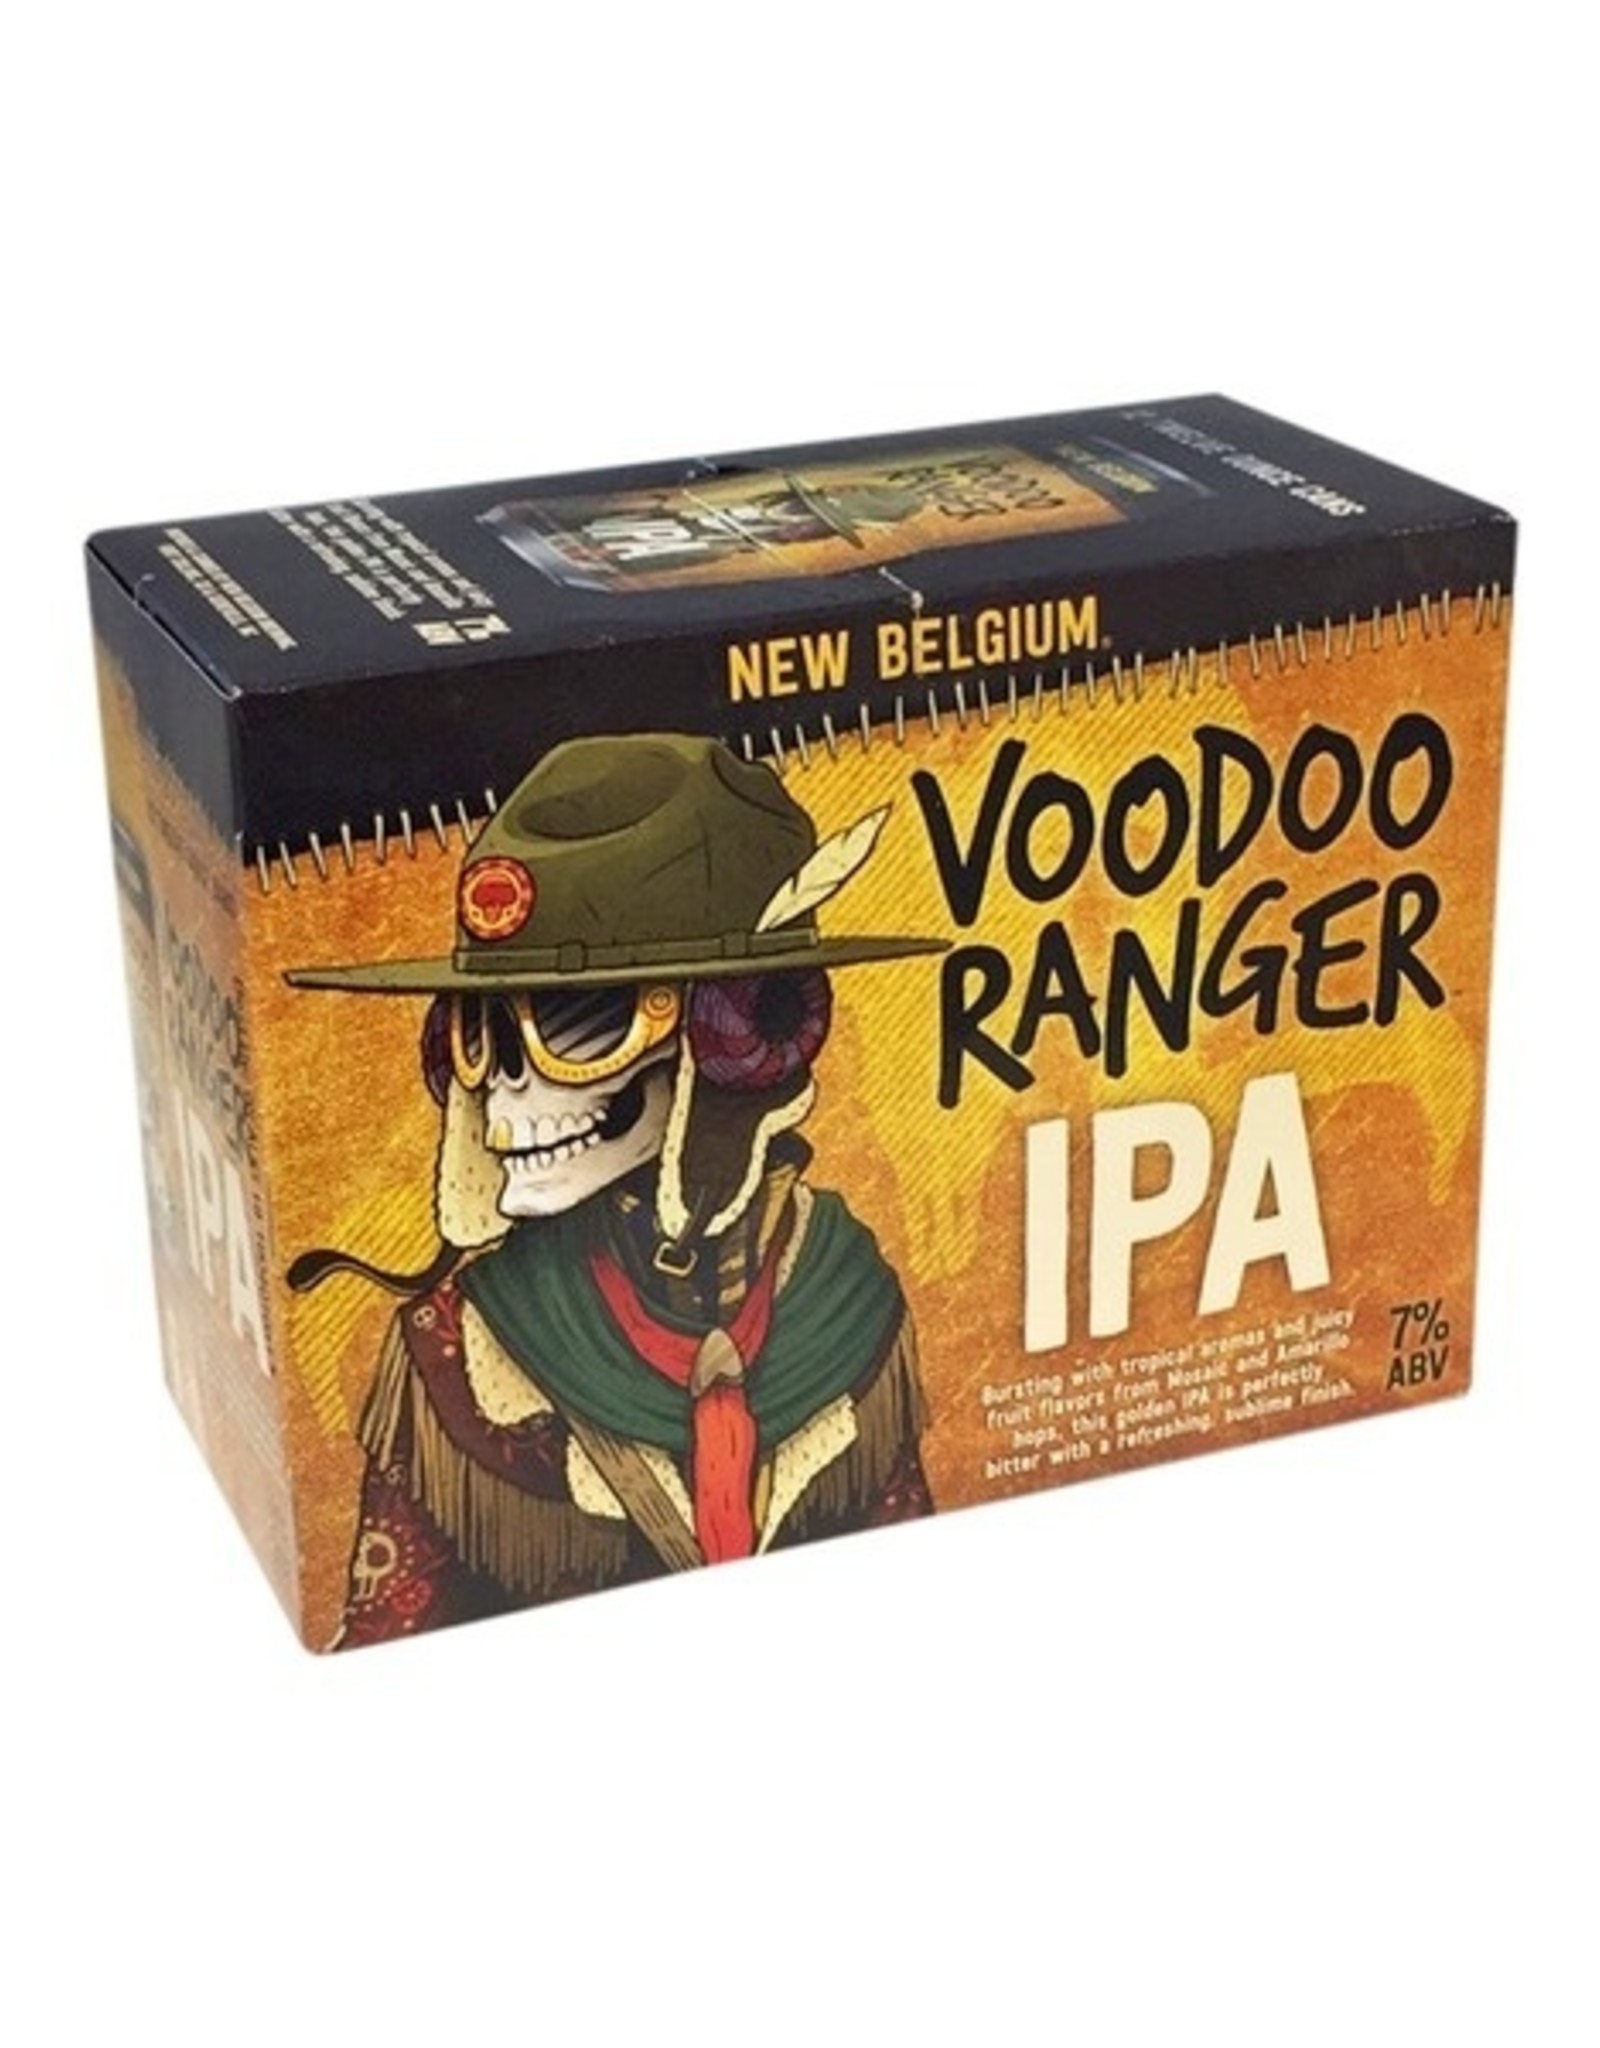 New Belgium Voodoo Ranger VP IPA 12x12 oz cans